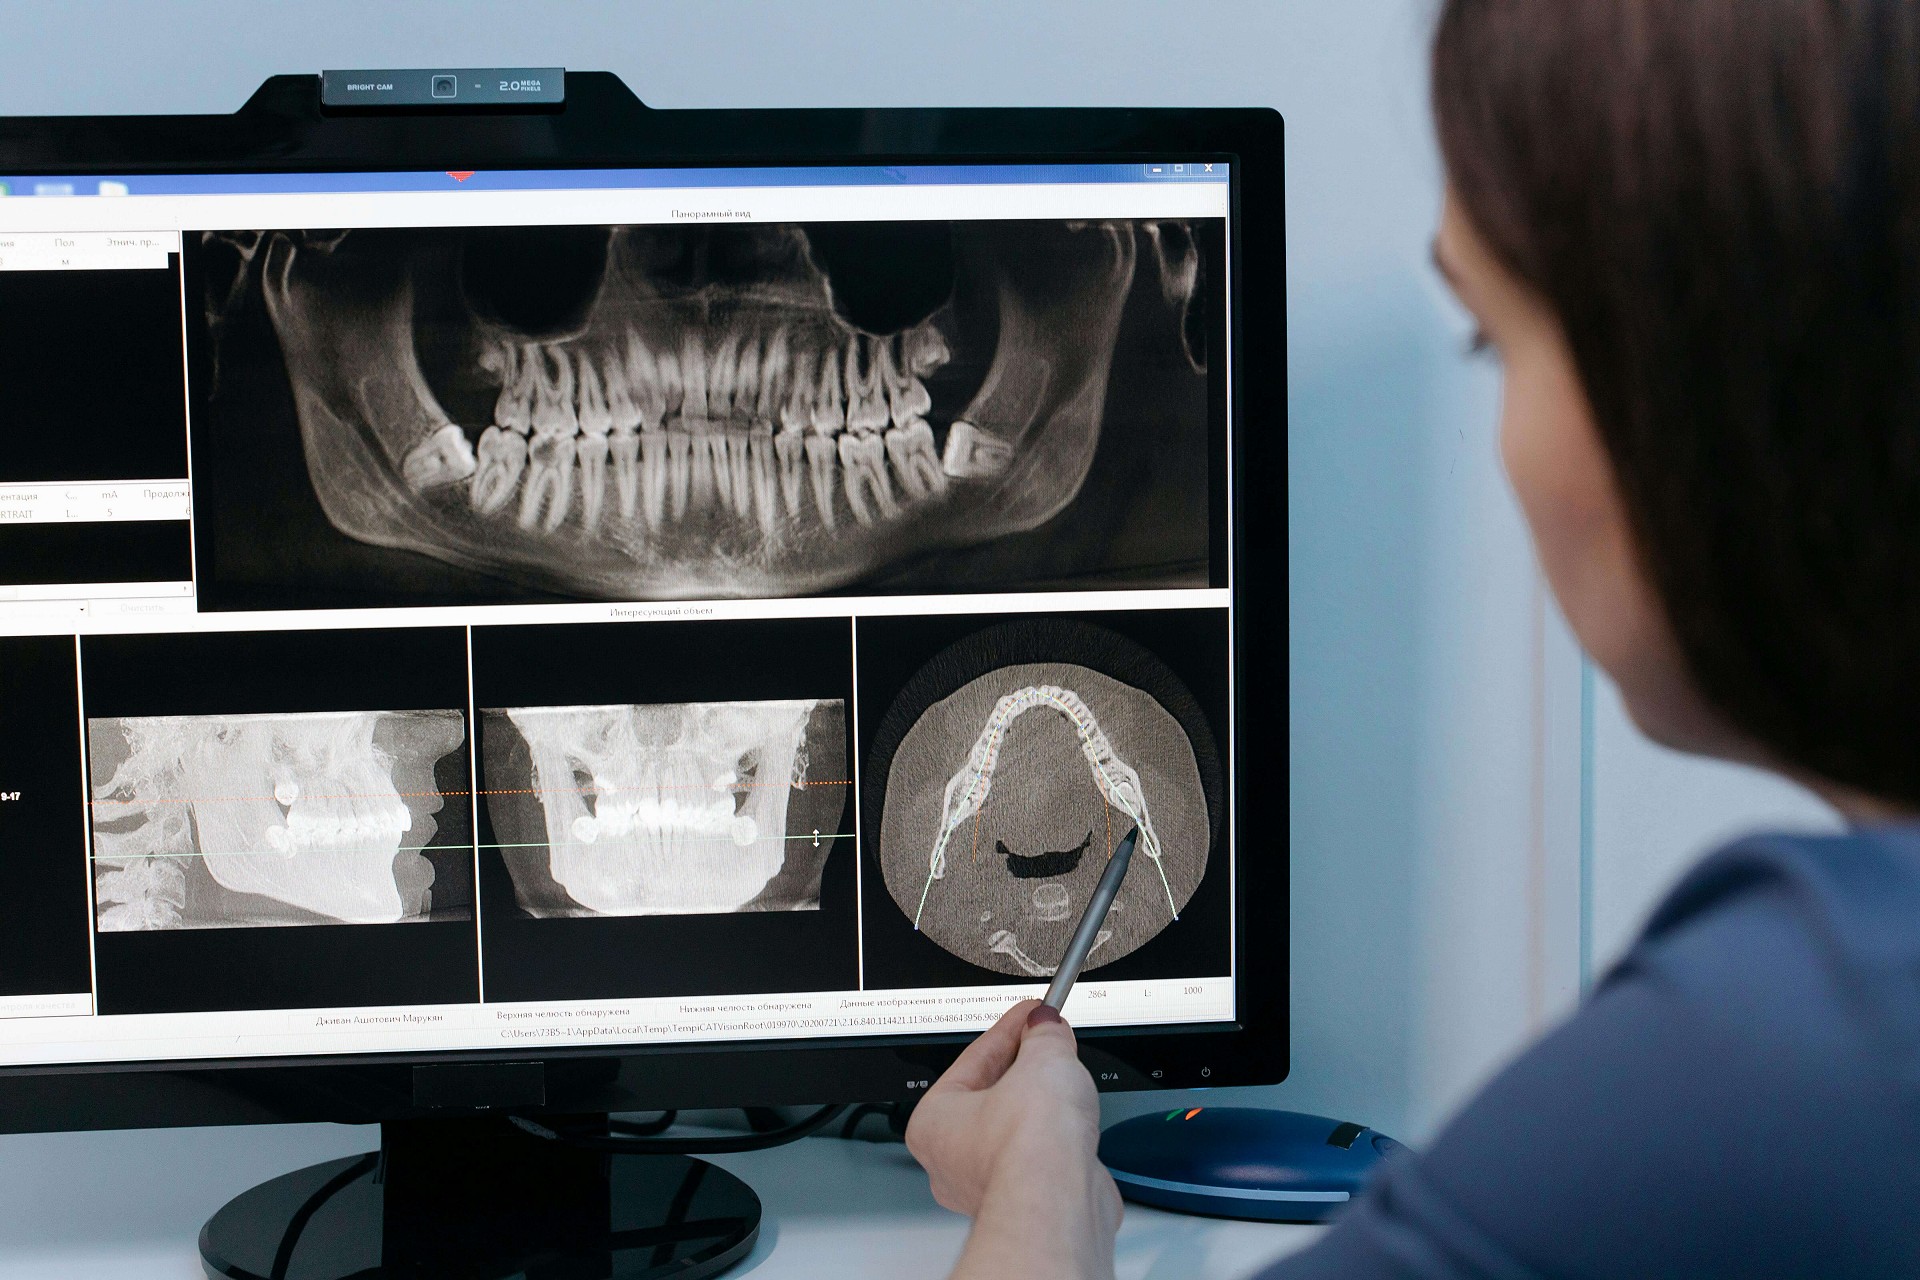 Röntgenfelvétel a fogorvosnál? Biztonságosabb, mint gondolná